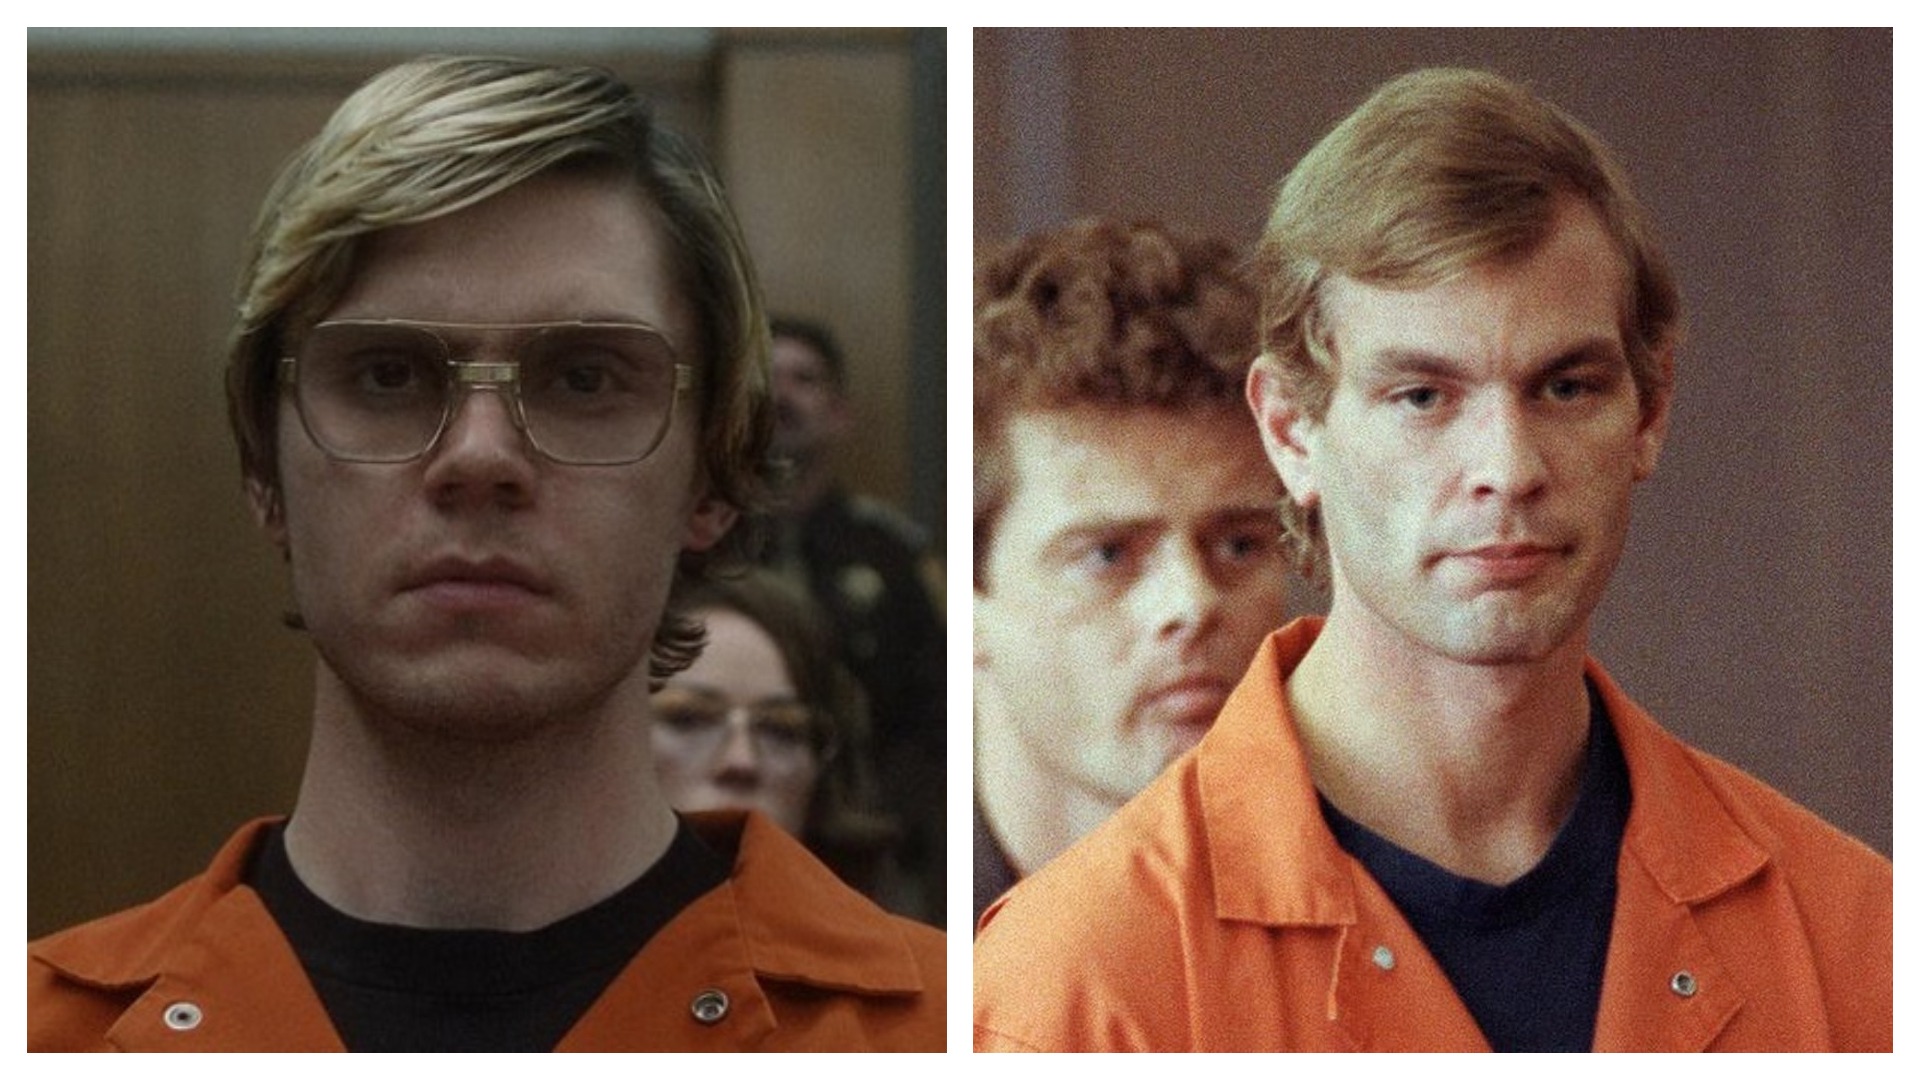 Colagem coloca o ator Evan Peters em seu papel como Jeffrey Dahmer, ao lado do próprio Dahmer, durante seu julgamento